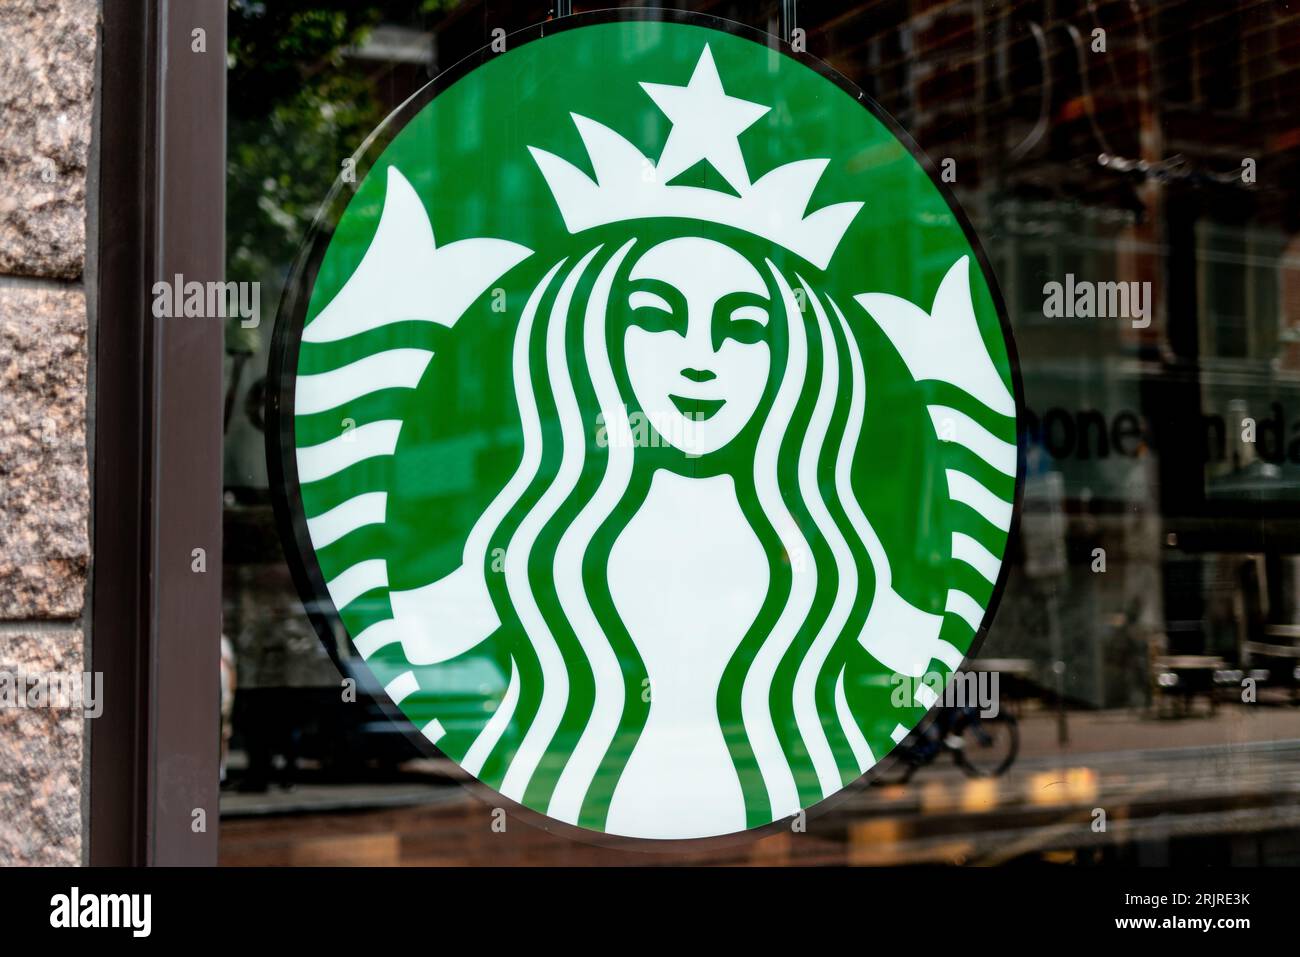 Eine Nahaufnahme des Starbucks Logos im Fenster eines Cafés in Amsterdam. Stockfoto